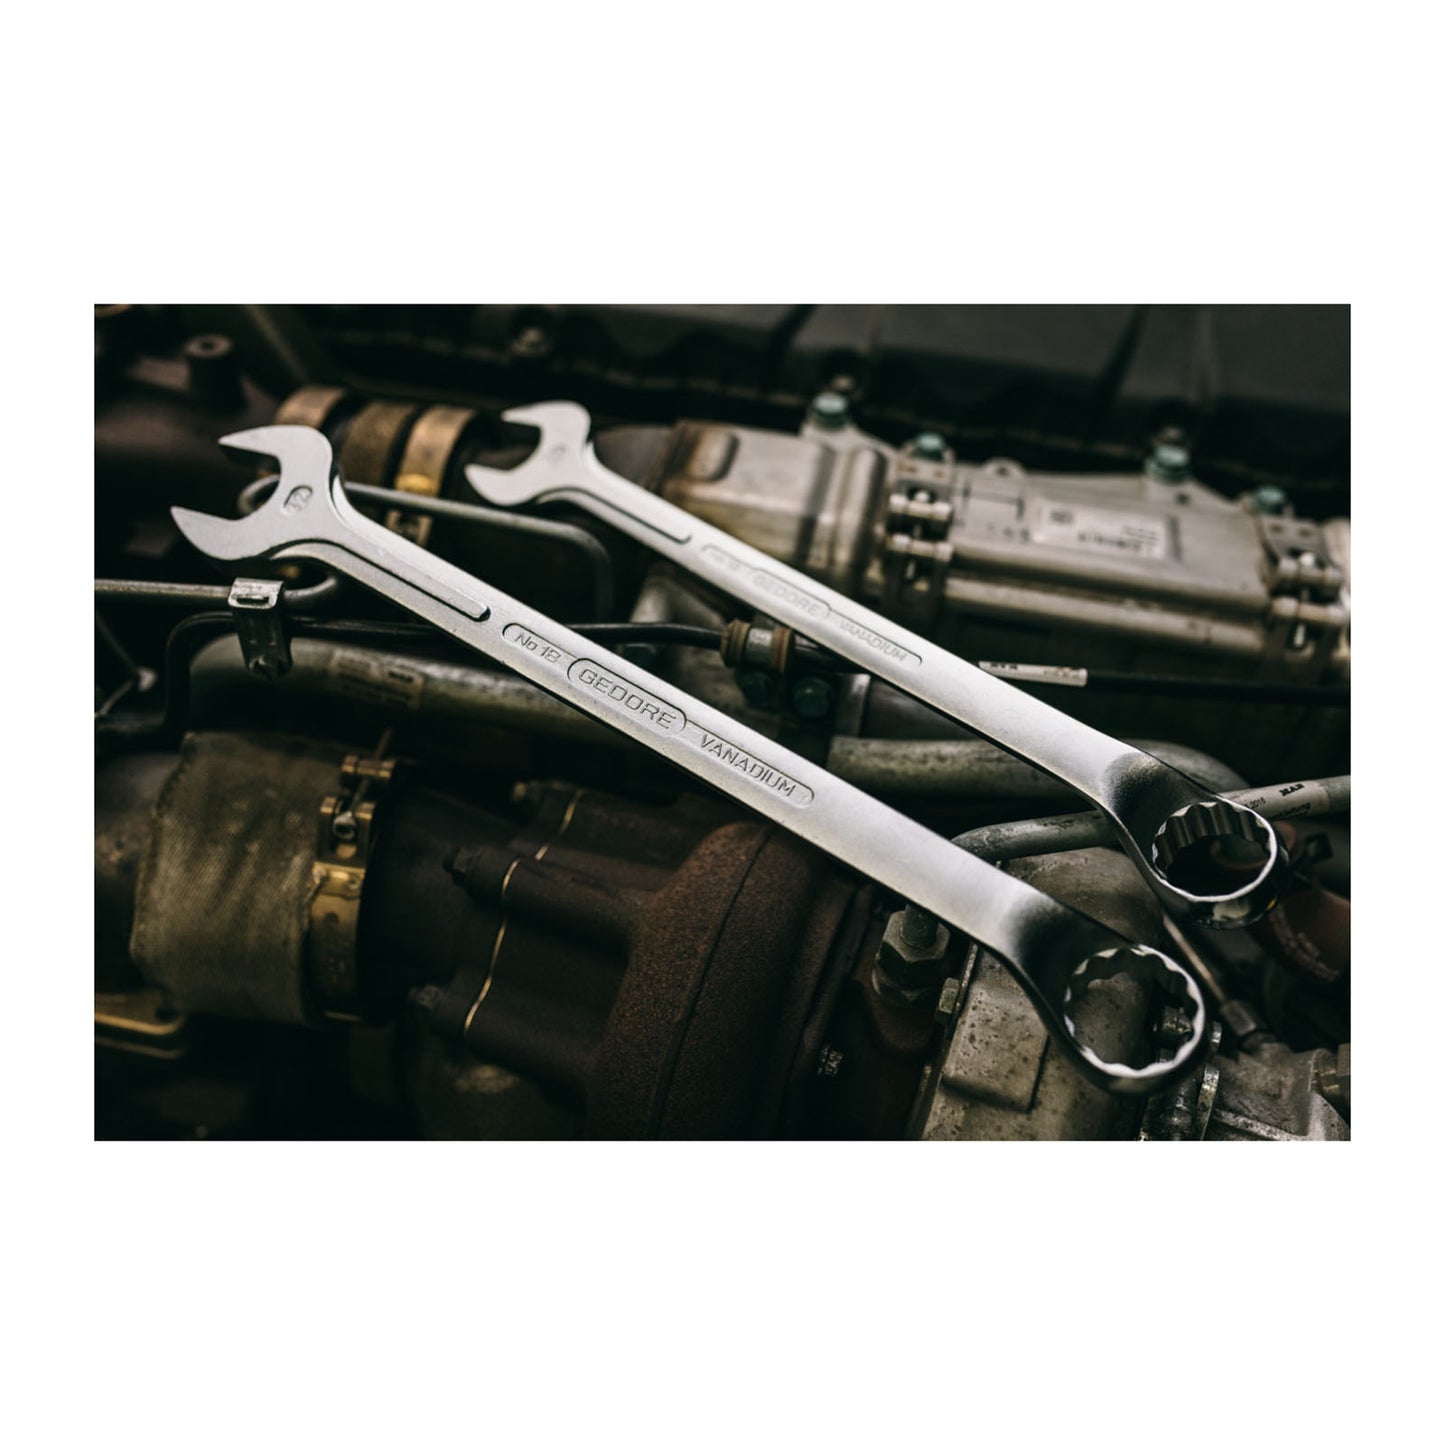 GEDORE 1 B 1.3/4AF - Combination Wrench, 1.3/4AF (6007410)